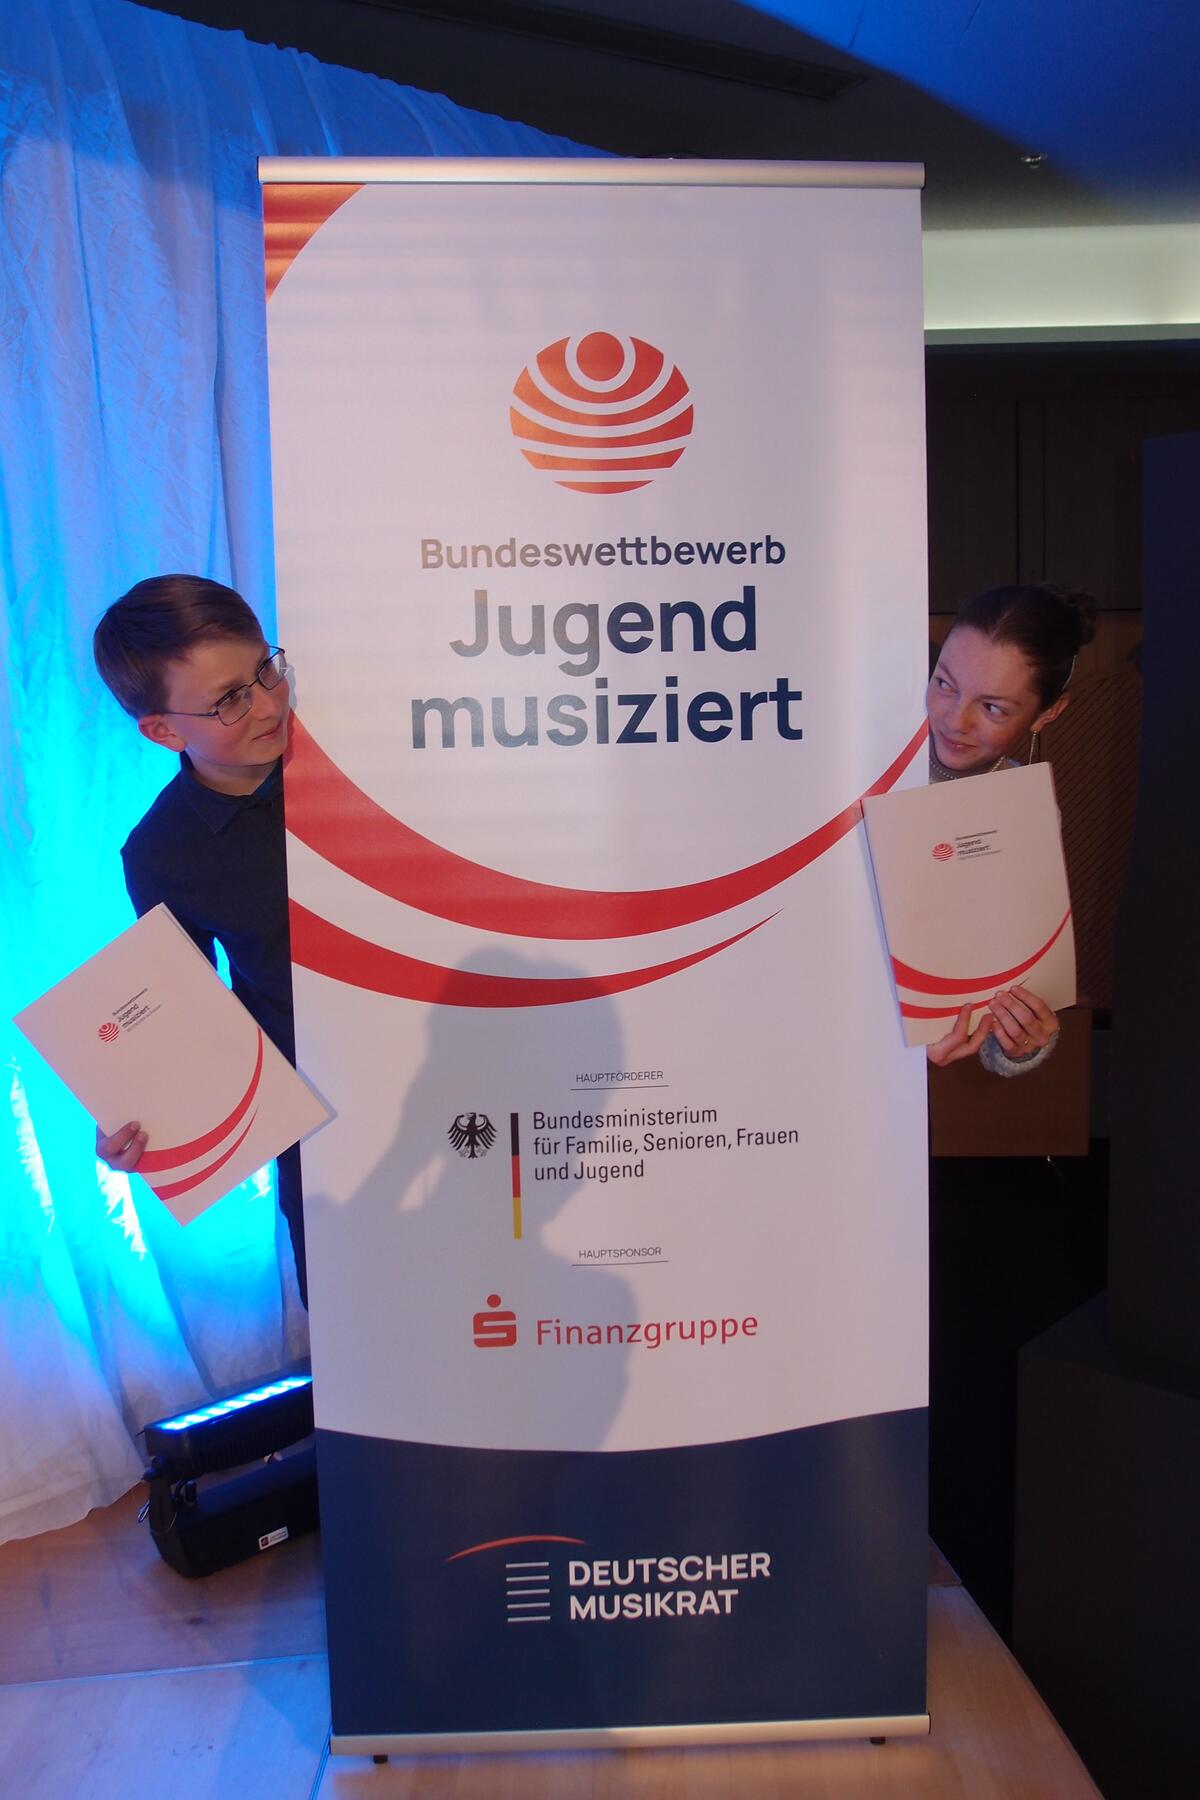 Bild vergrößern: Die glücklichen Preisträger beim Bundesfinale "Jugend musiziert" - das Tuba-Duo Ida und Marek